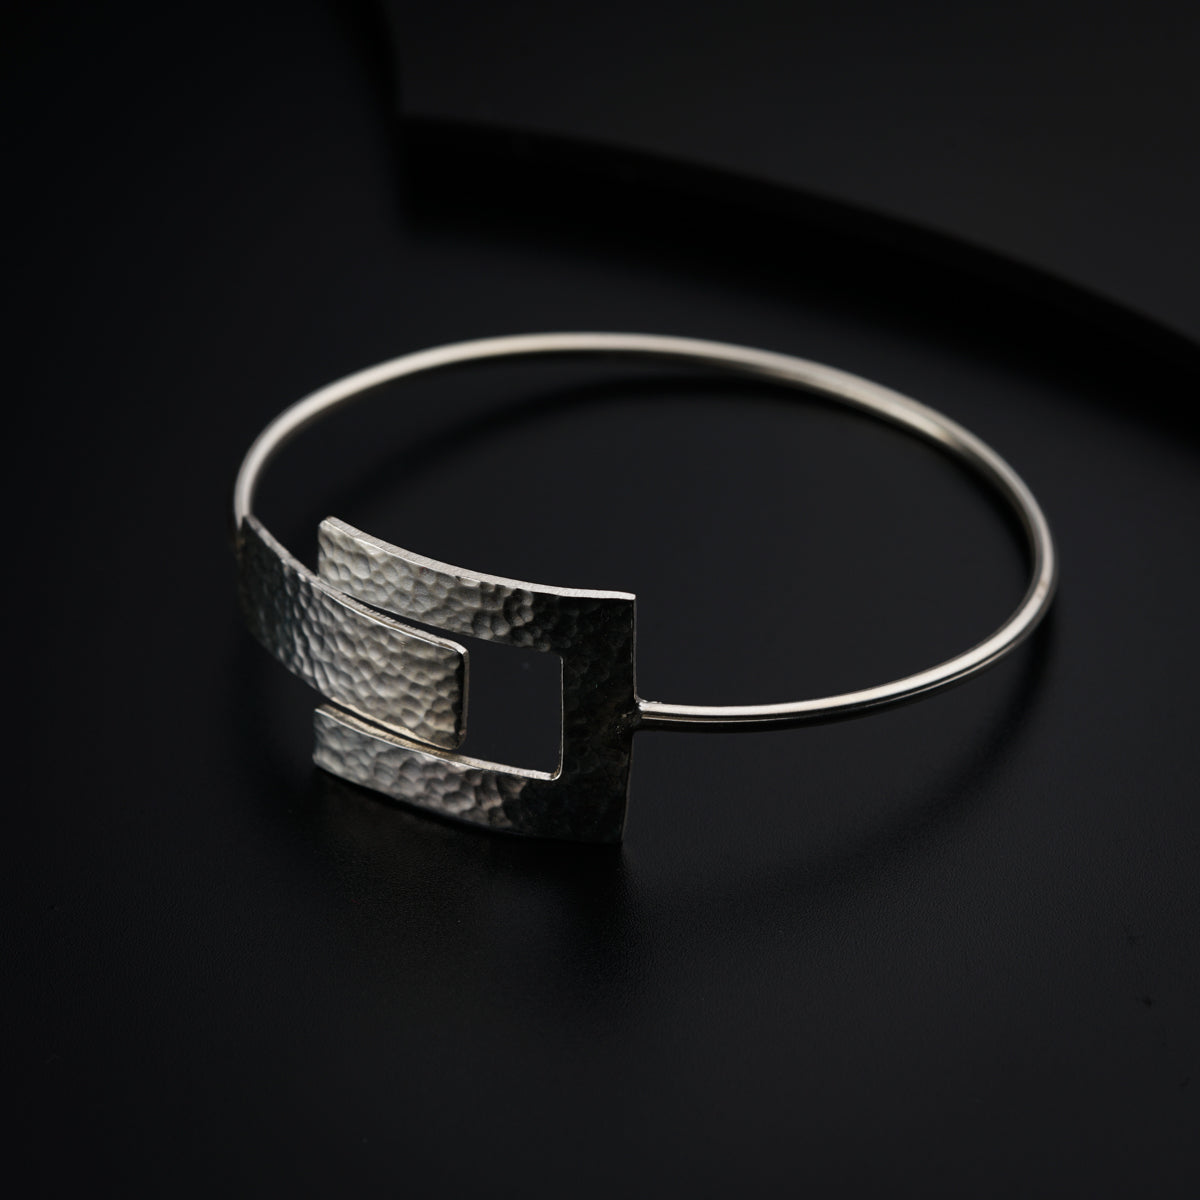 a close up of a silver bracelet on a black surface